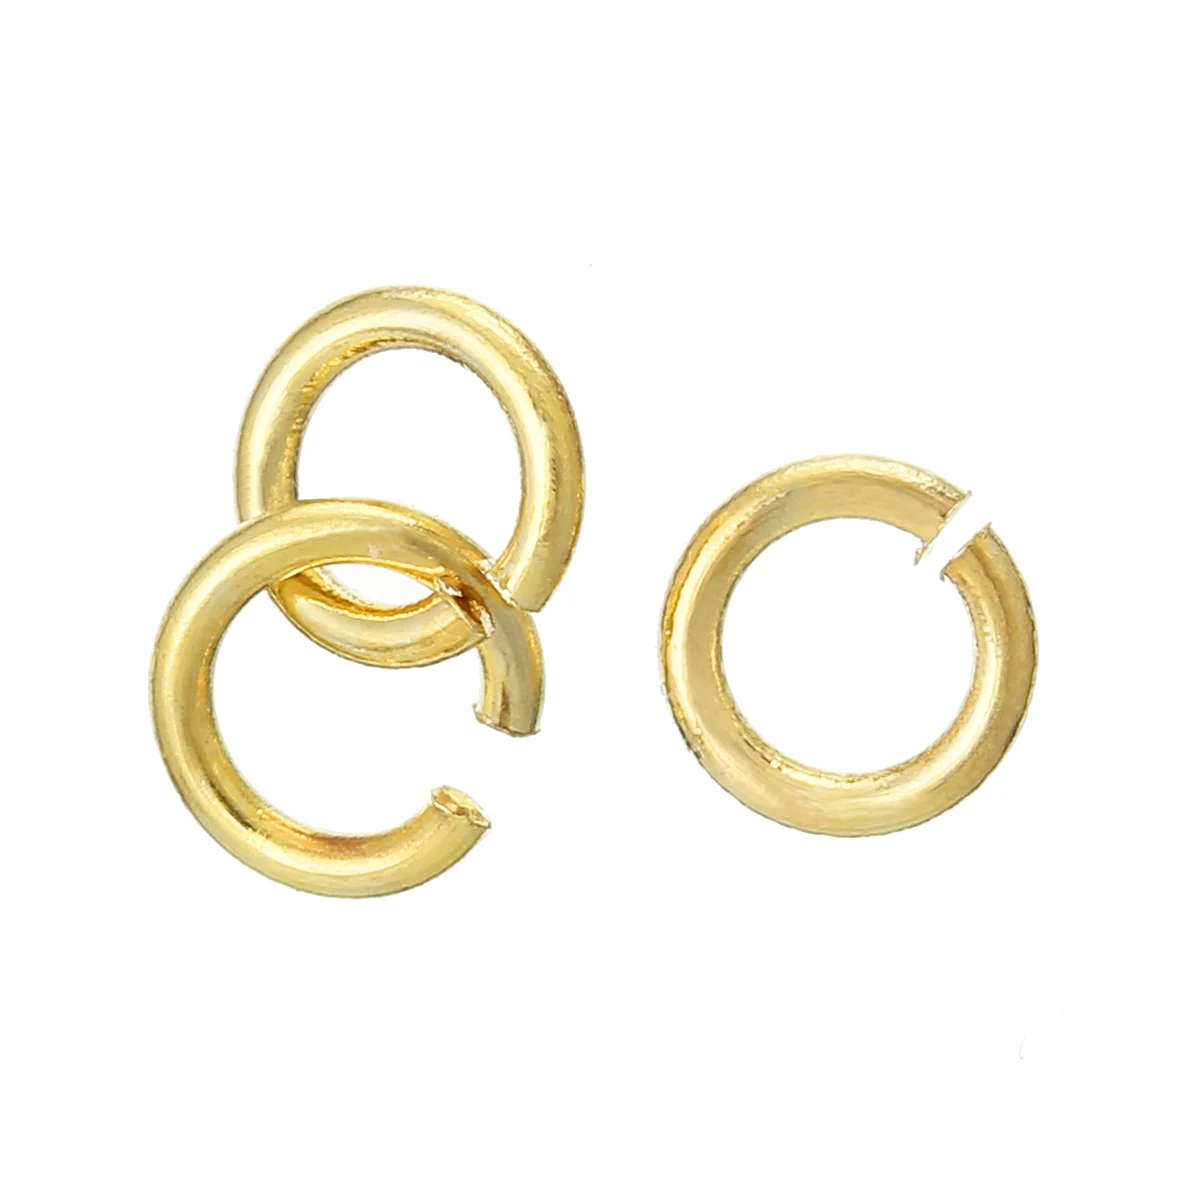 8 сезонов медь открытое соединительное кольцо результаты золотой цвет 4 мм диаметр, 300 шт (B34073)